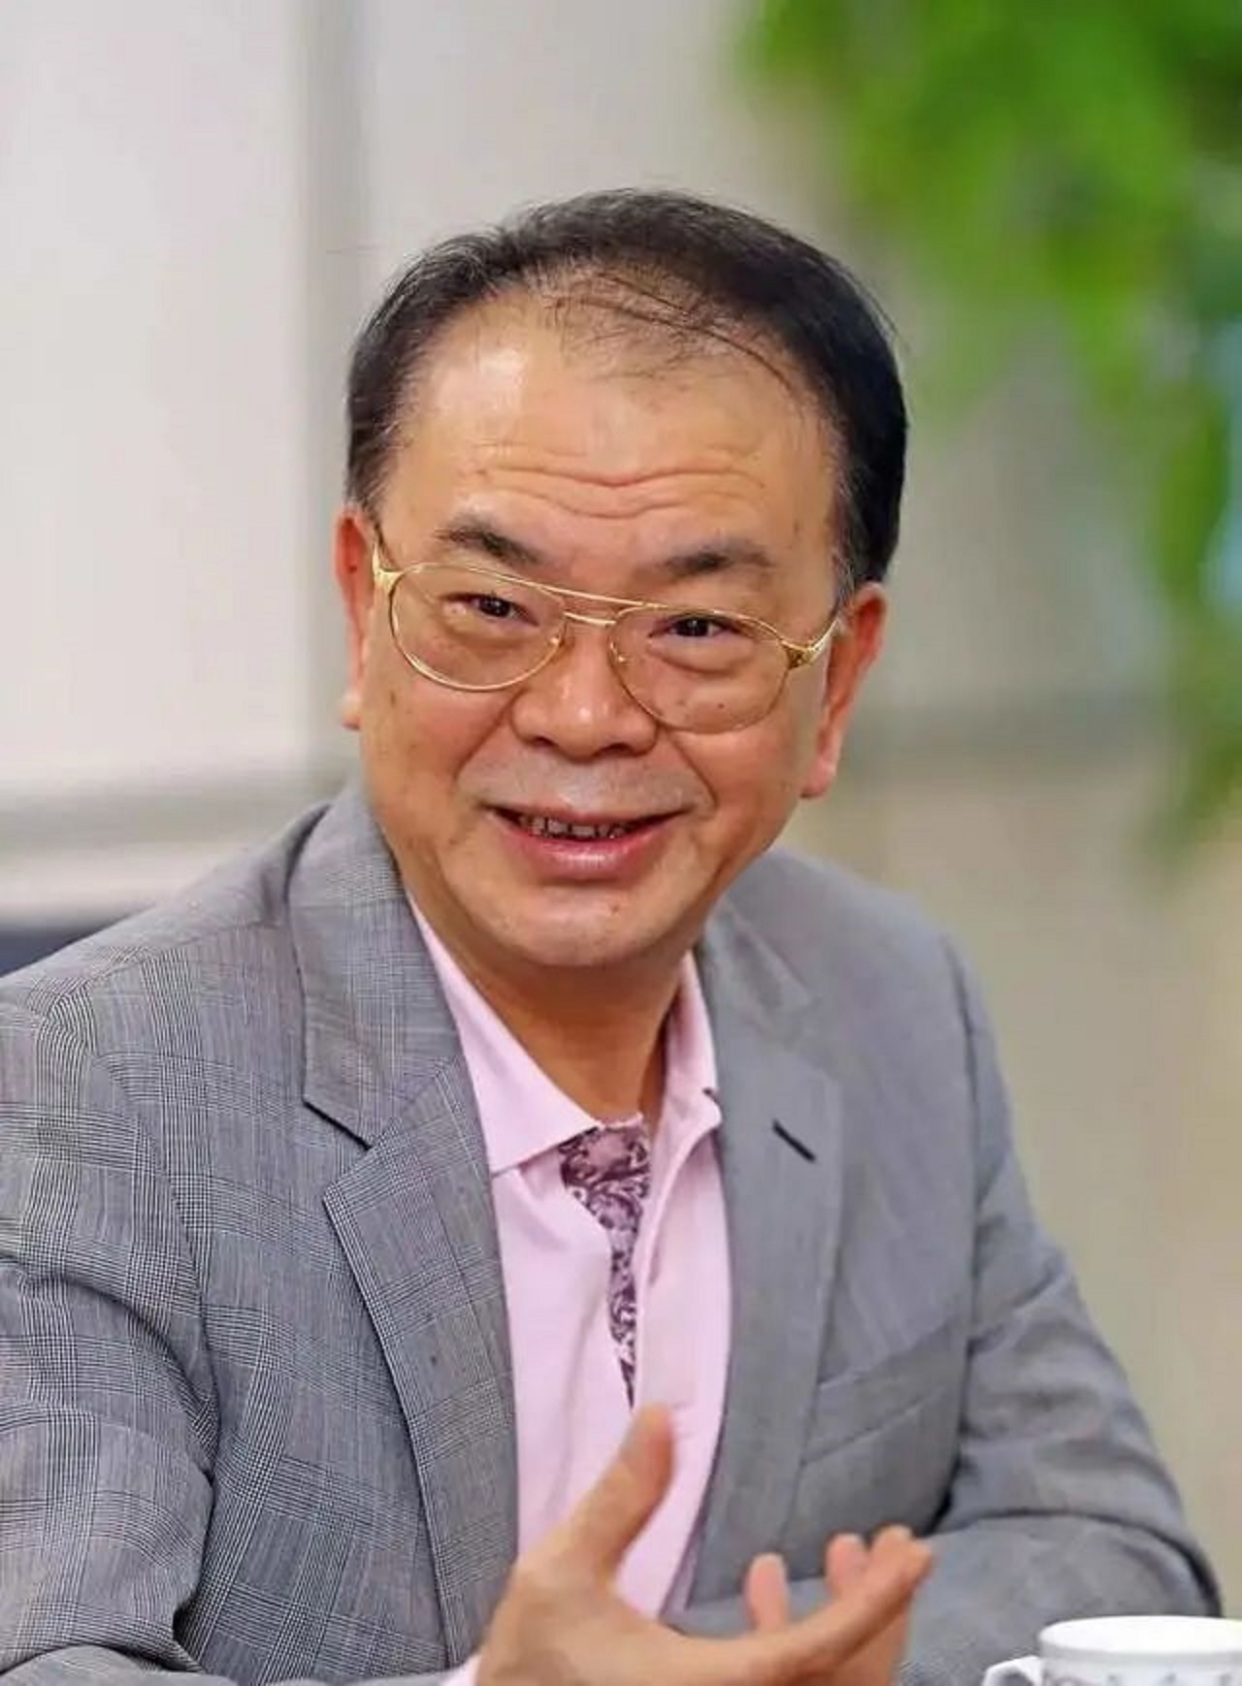 公开资料显示,林秀成,1955年10月出生,福建安溪人,大学学历,高级经济